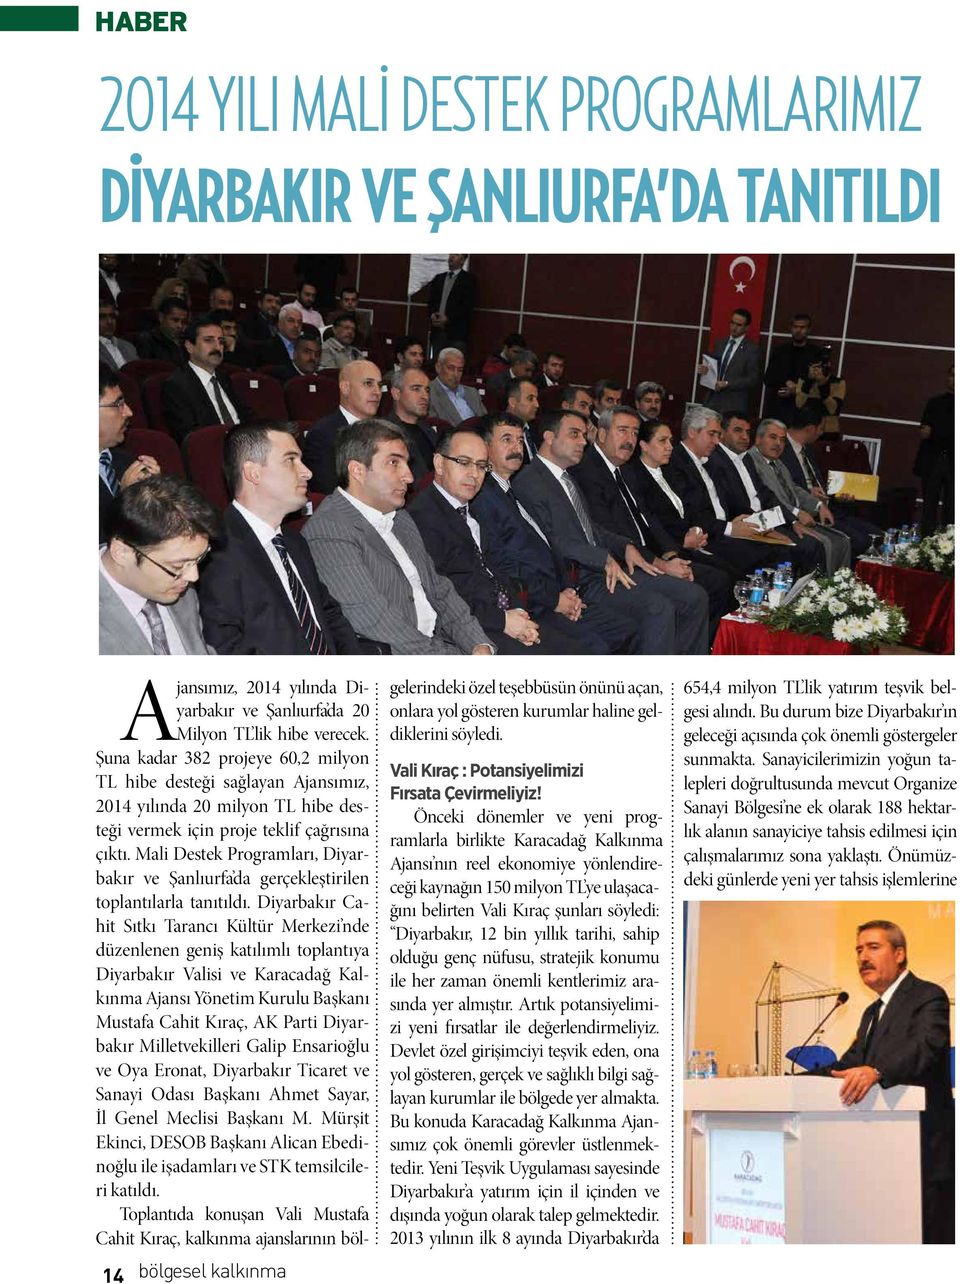 Mali Destek Programları, Diyarbakır ve Şanlıurfa da gerçekleştirilen toplantılarla tanıtıldı.